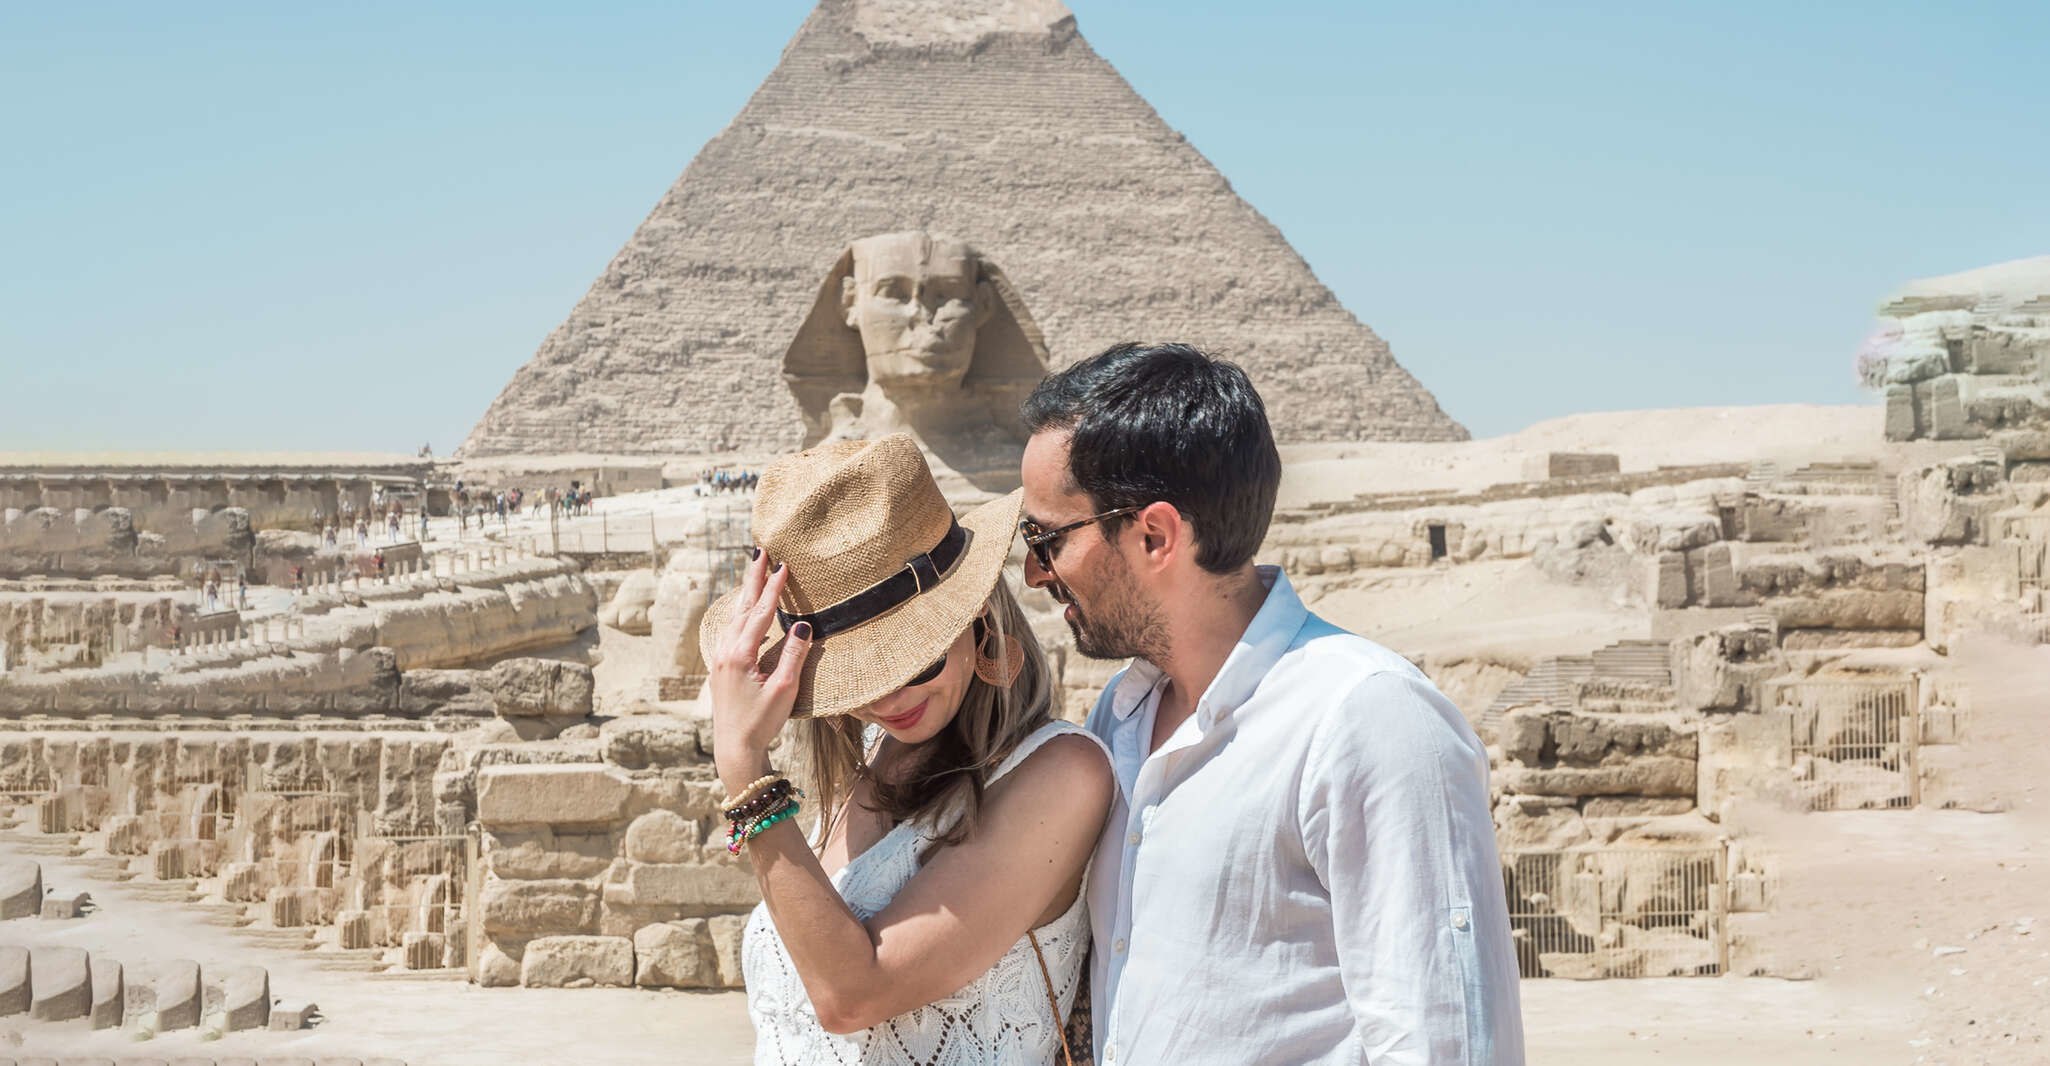 Полеты в египет последние новости. Каир Египет пирамиды. Пирамиды Египта Кайро. Каир пирамиды экскурсия. Пирамида Хеопса экскурсия.